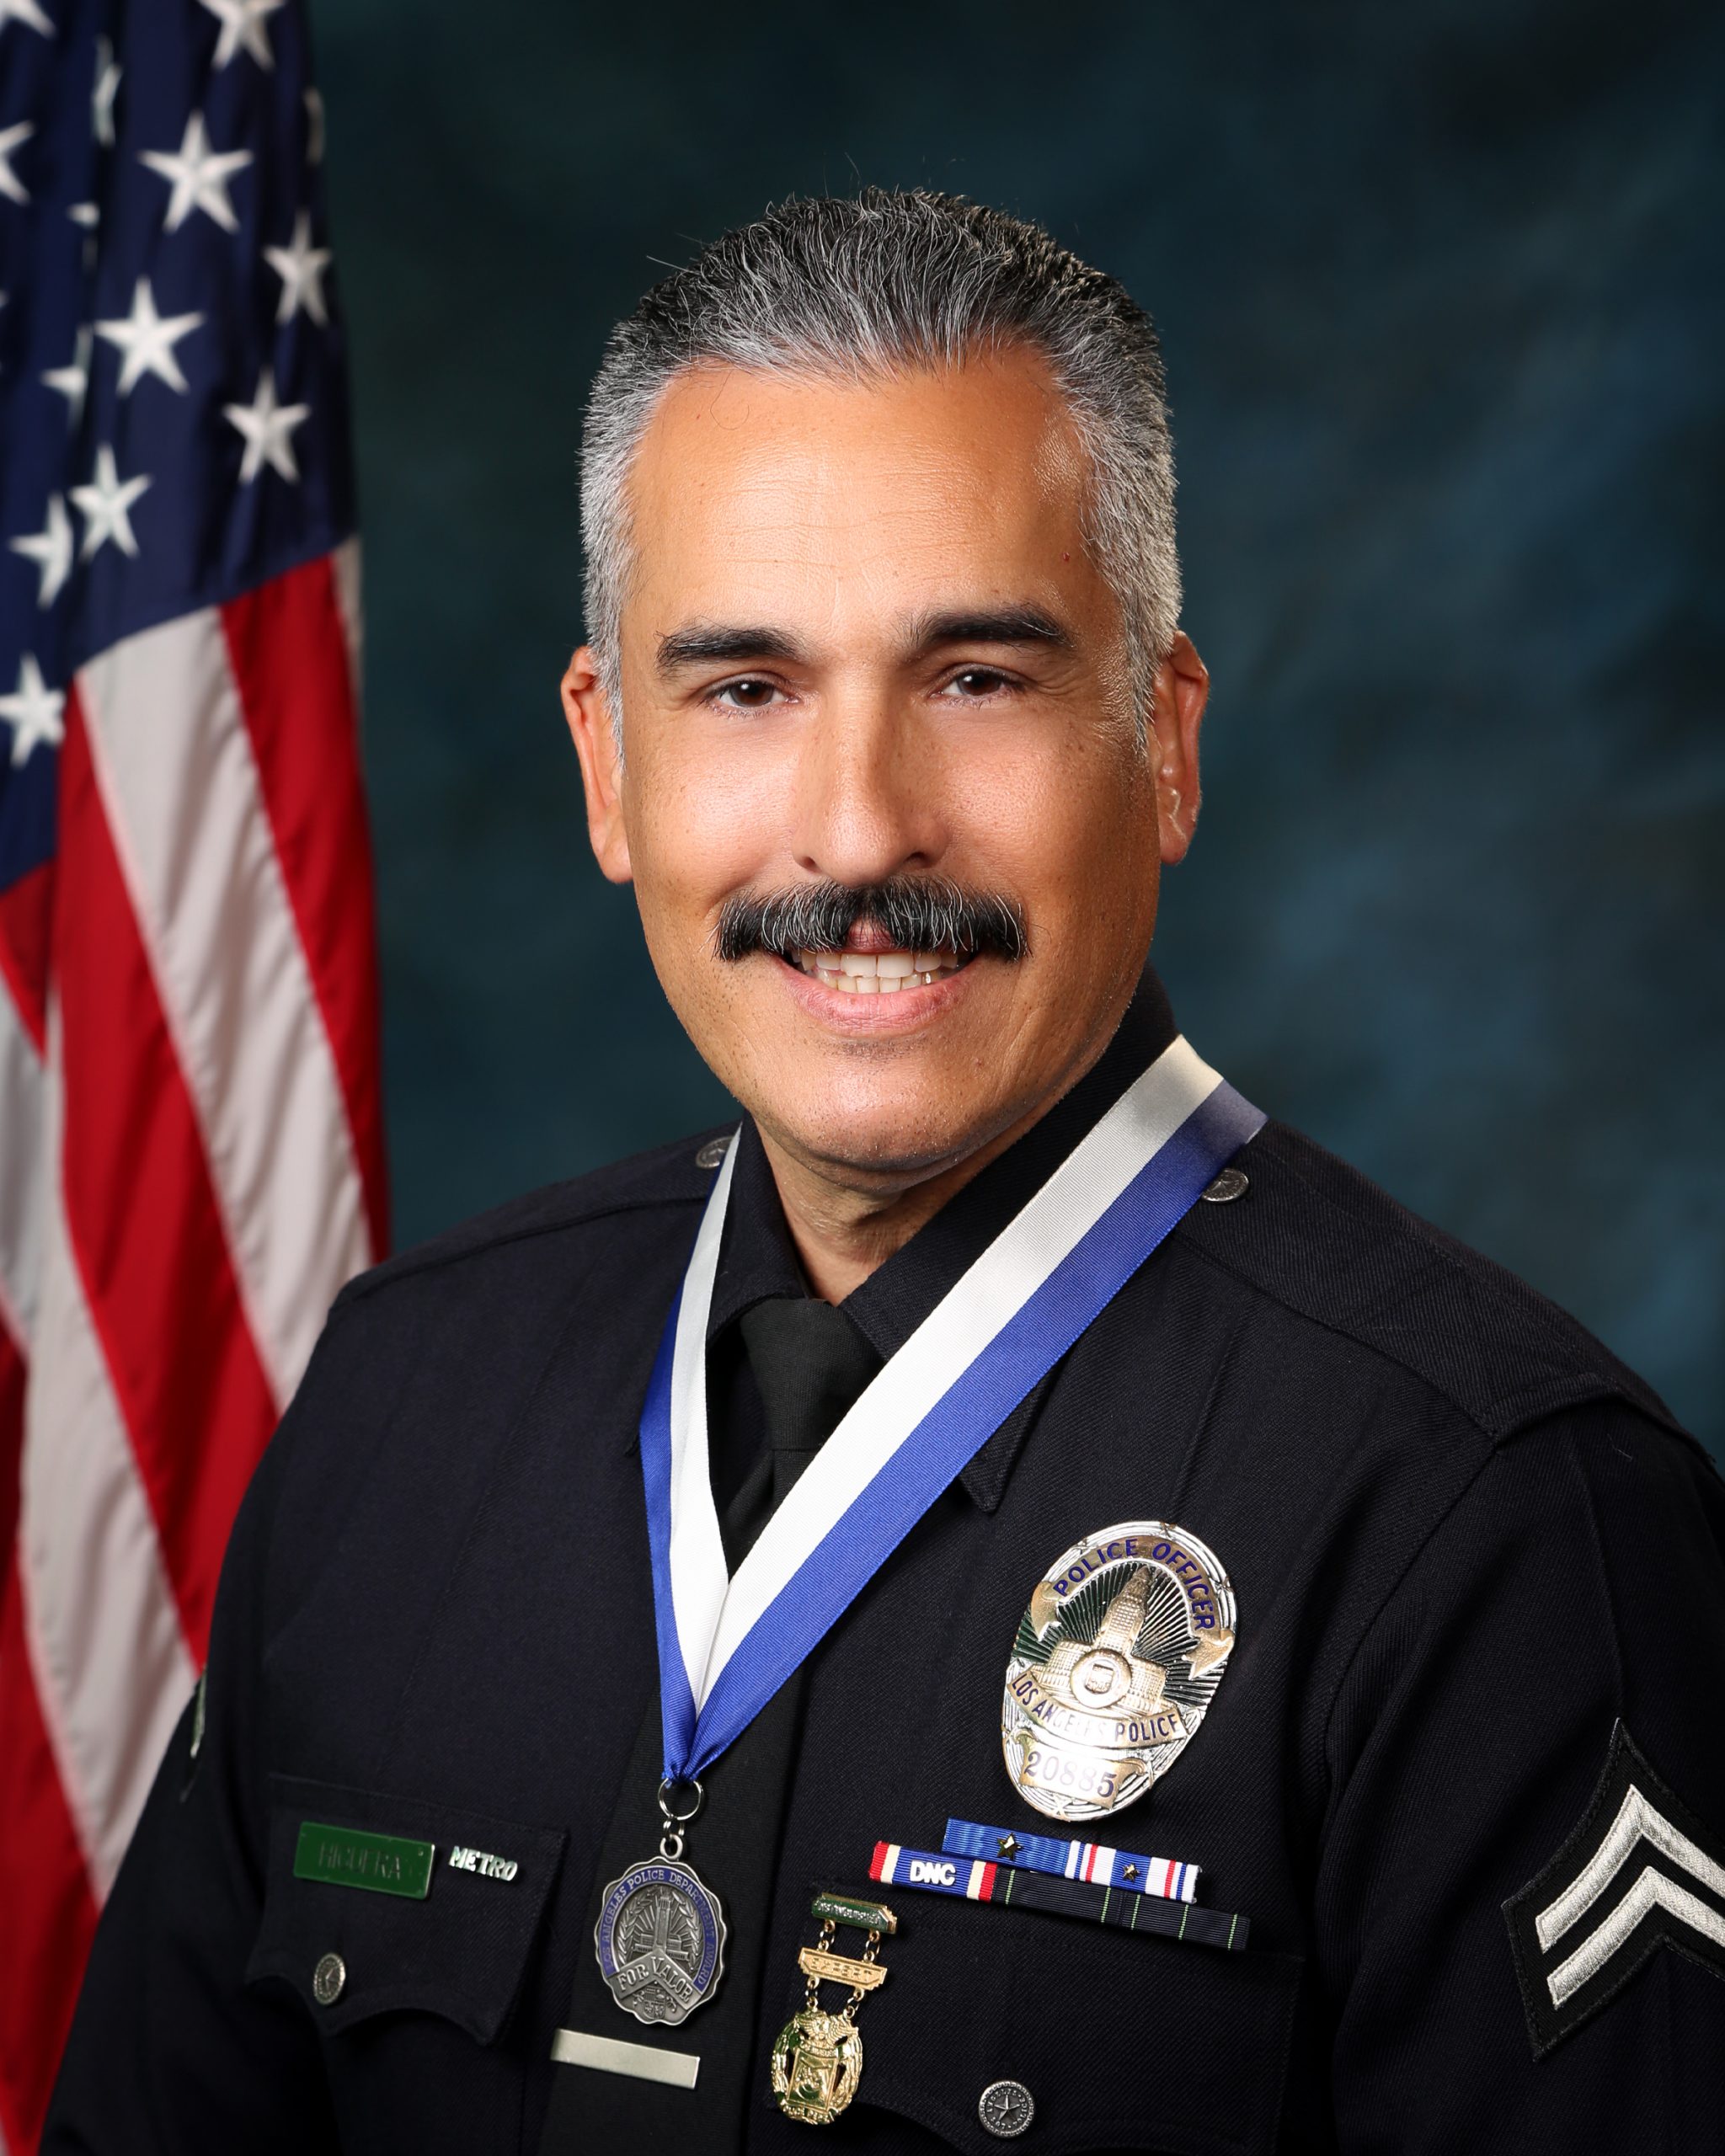 Officer Martin Higuera